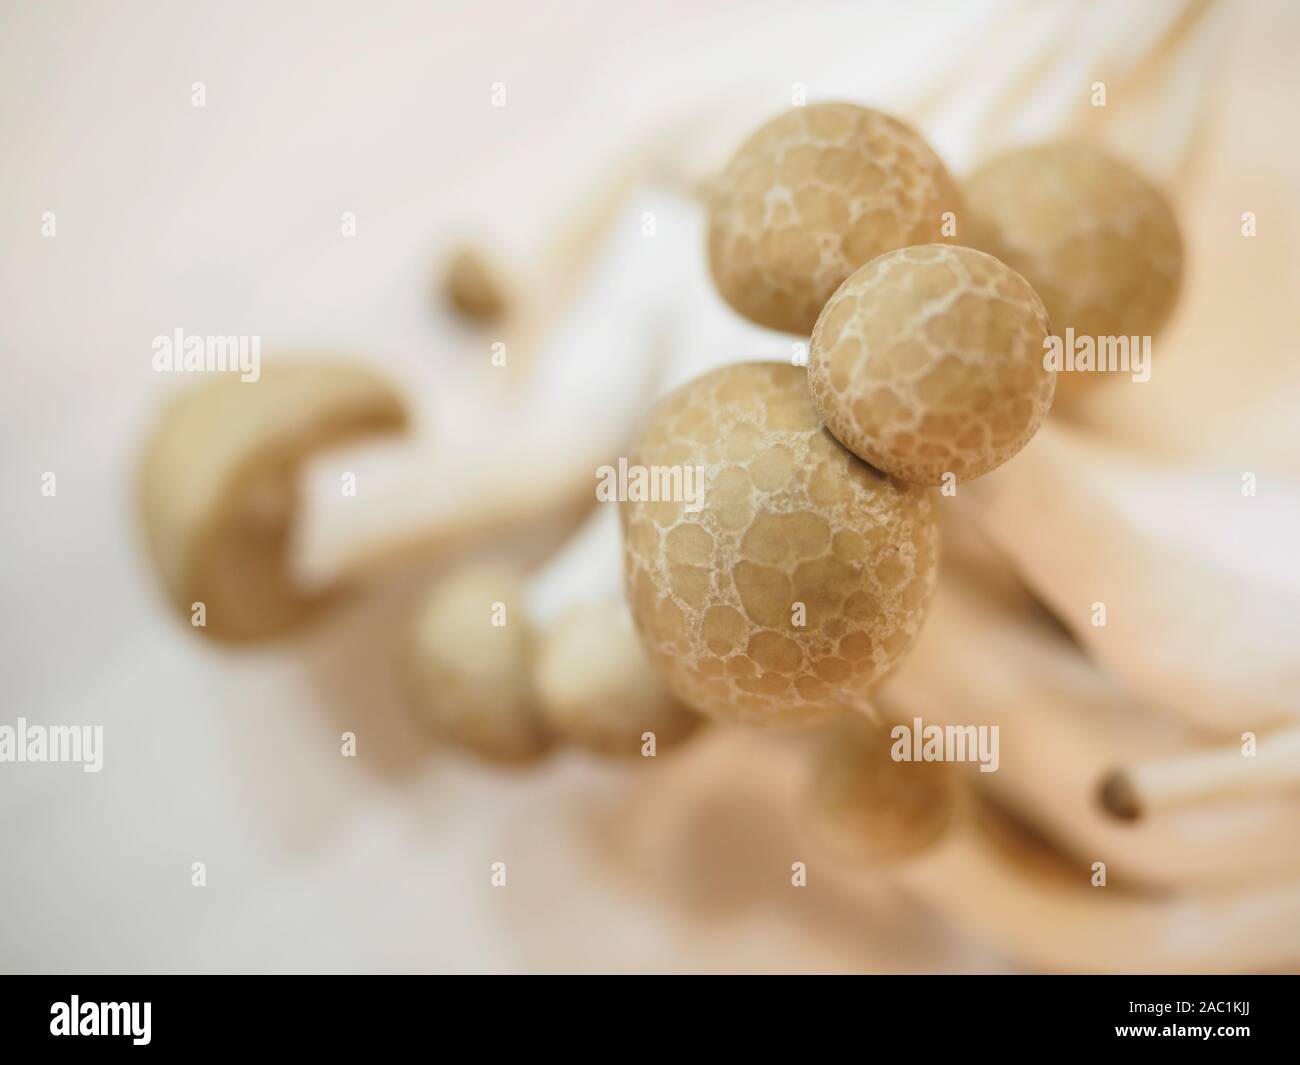 Shimeji mushrooms Stock Photo